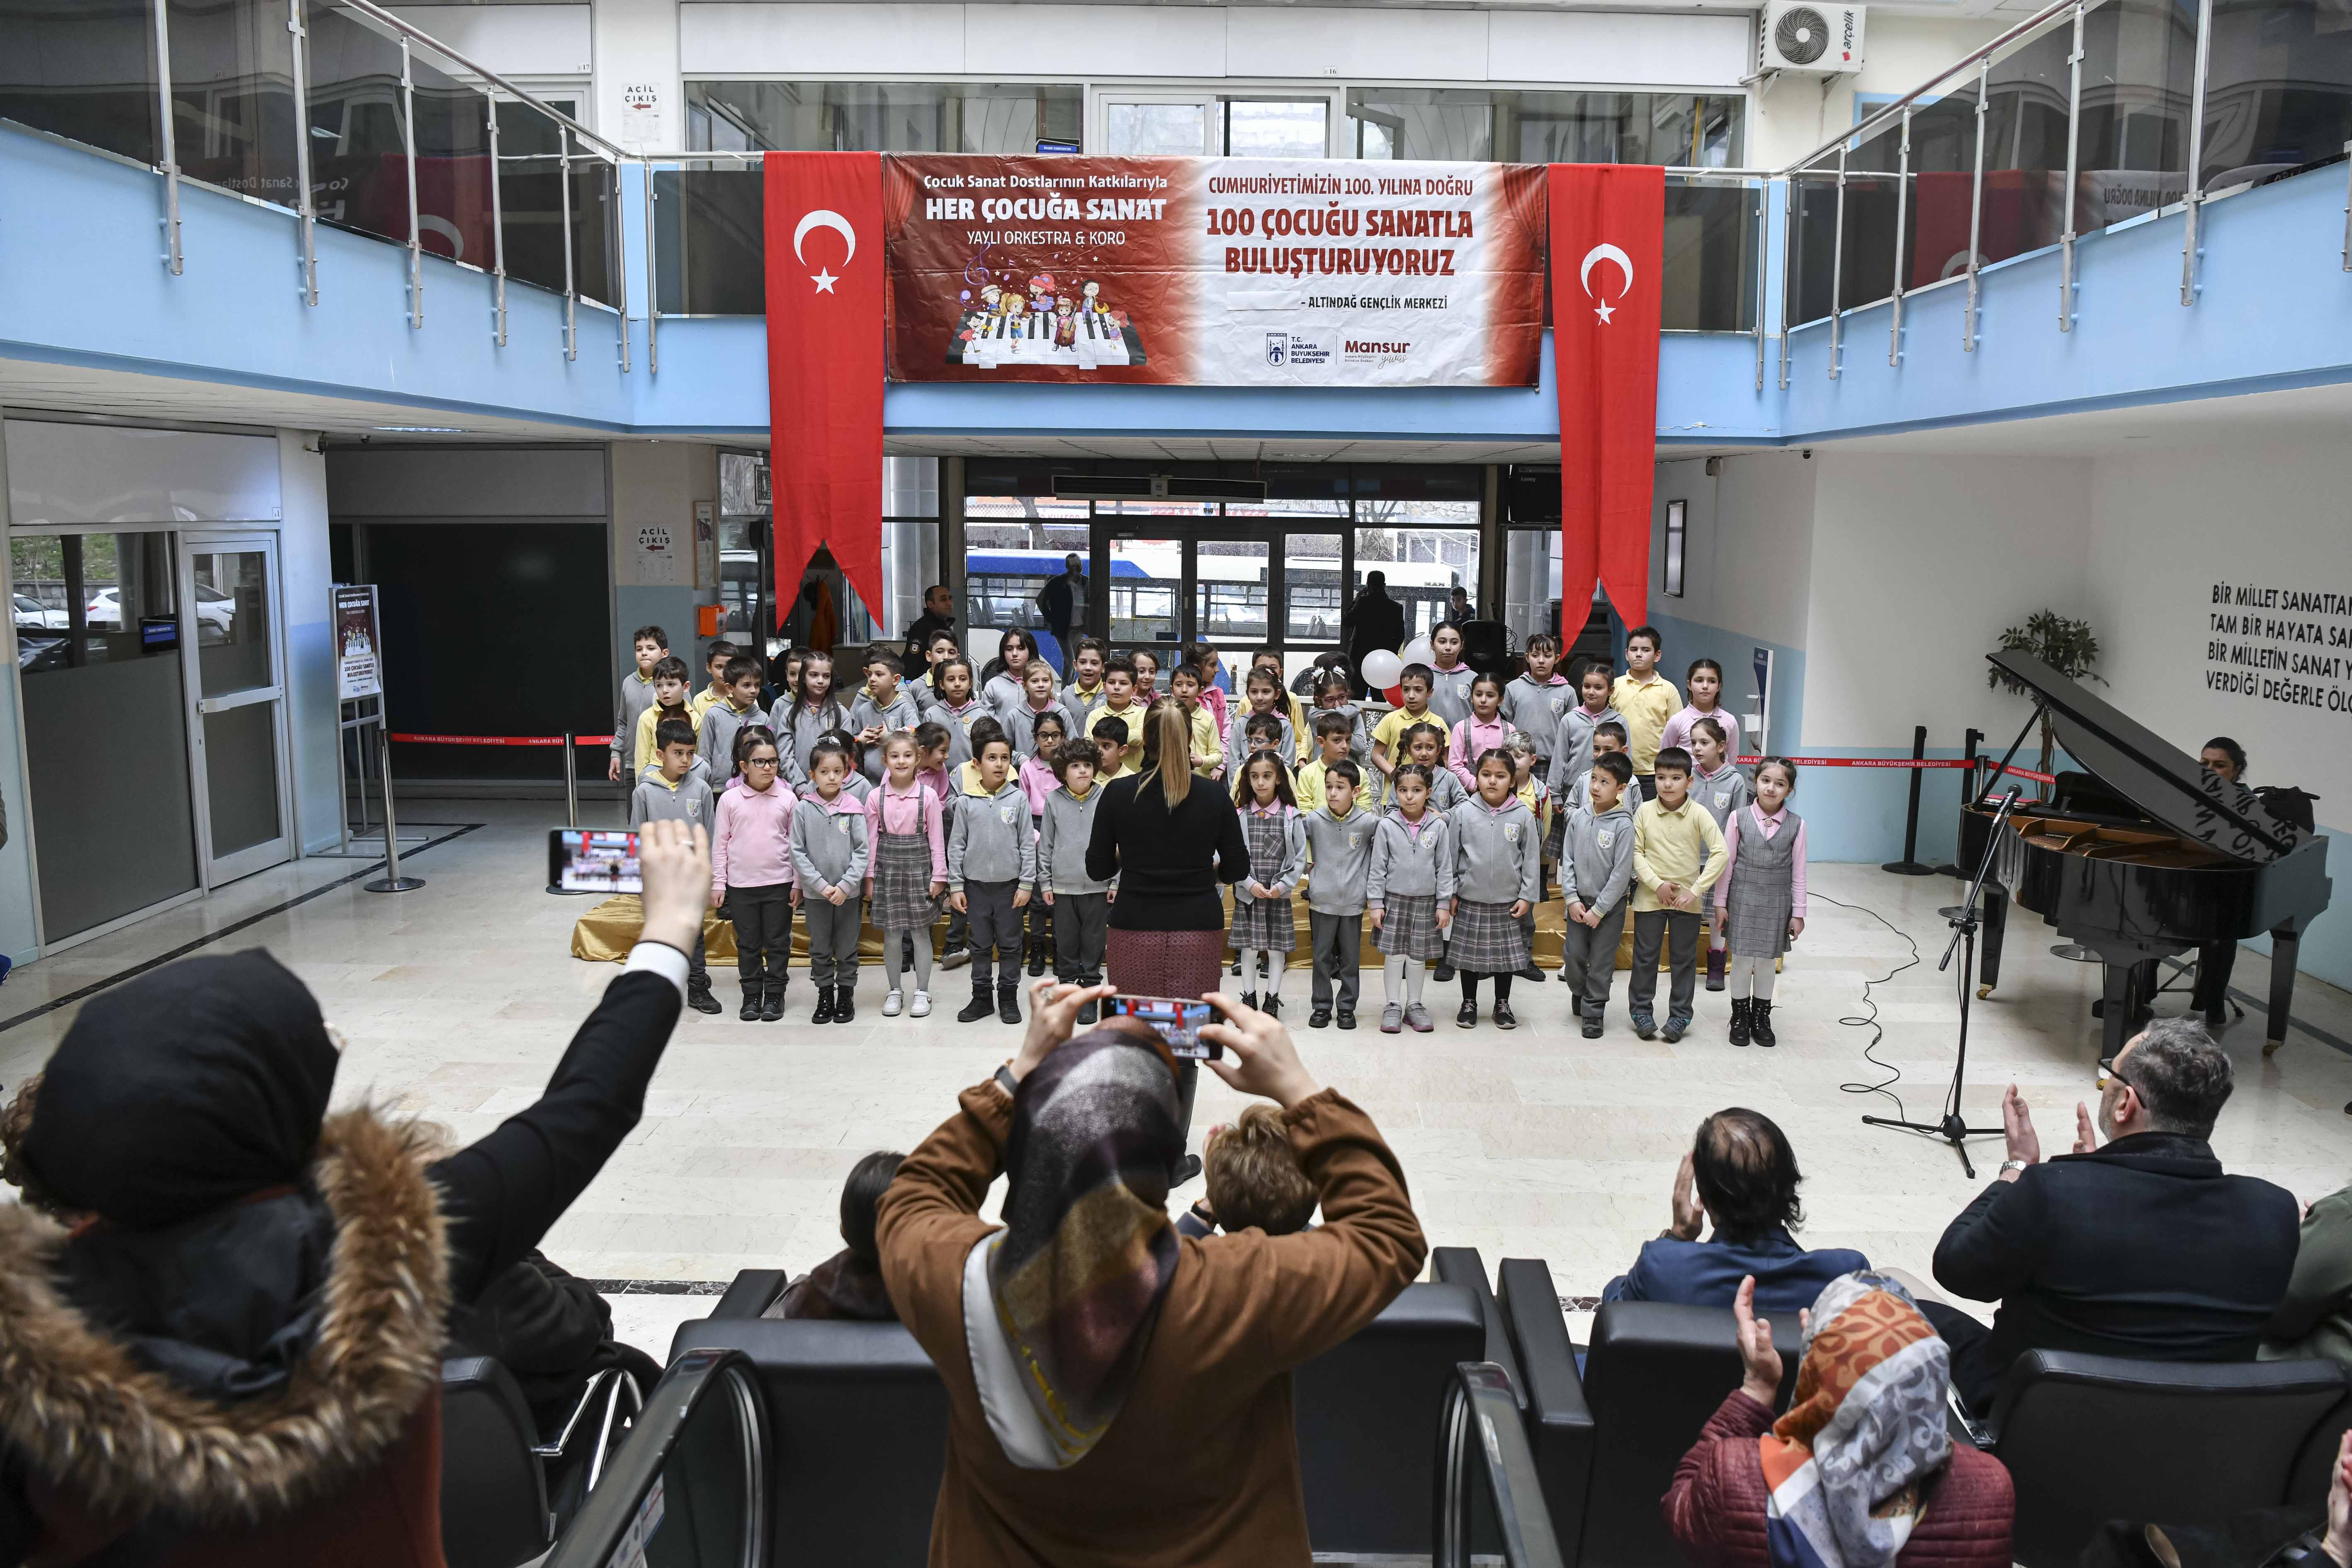 Ankara Büyükşehir’in “Her Çocuğa Sanat” projesinde ilk konser heyecanı<